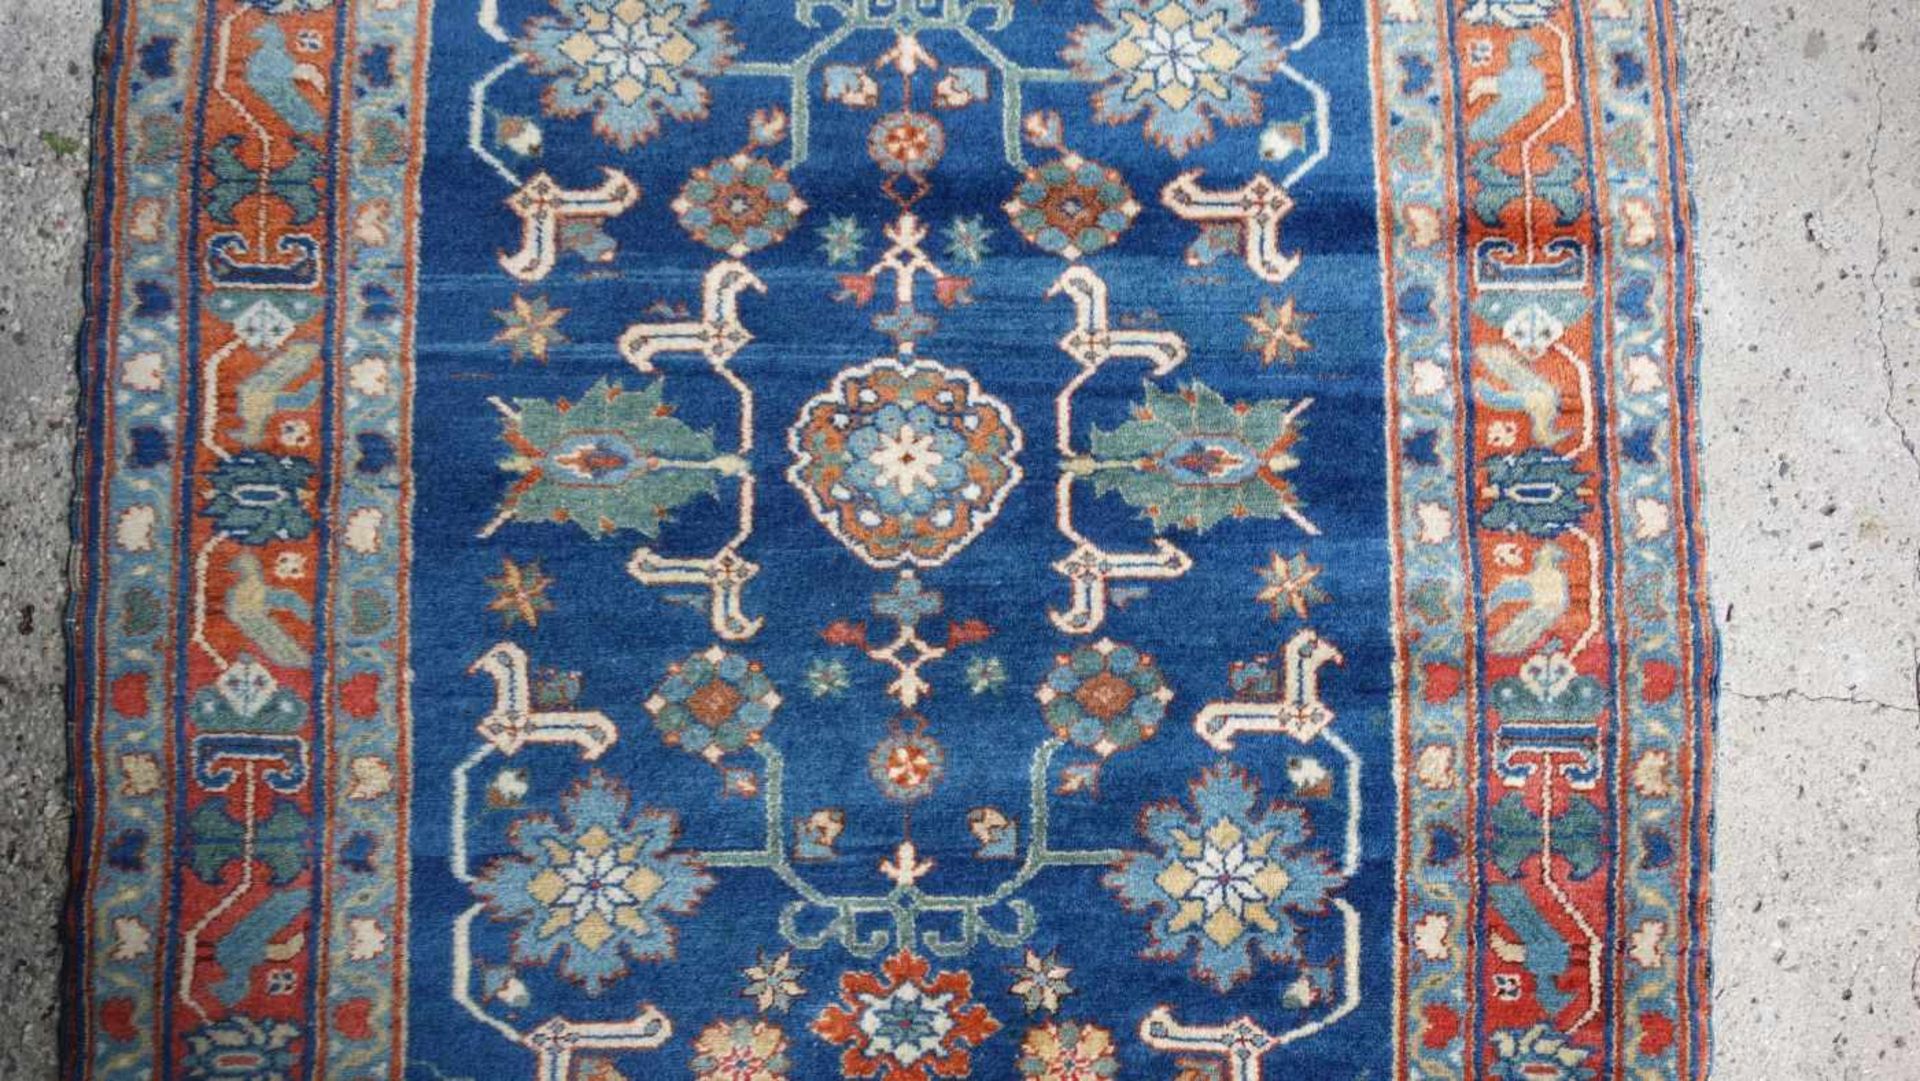 SCHIRVAN TEPPICH (SCHIRWAN) / shirvan rug, Kaukasus. Feiner Teppich mit dichtem Flor; - Image 3 of 8